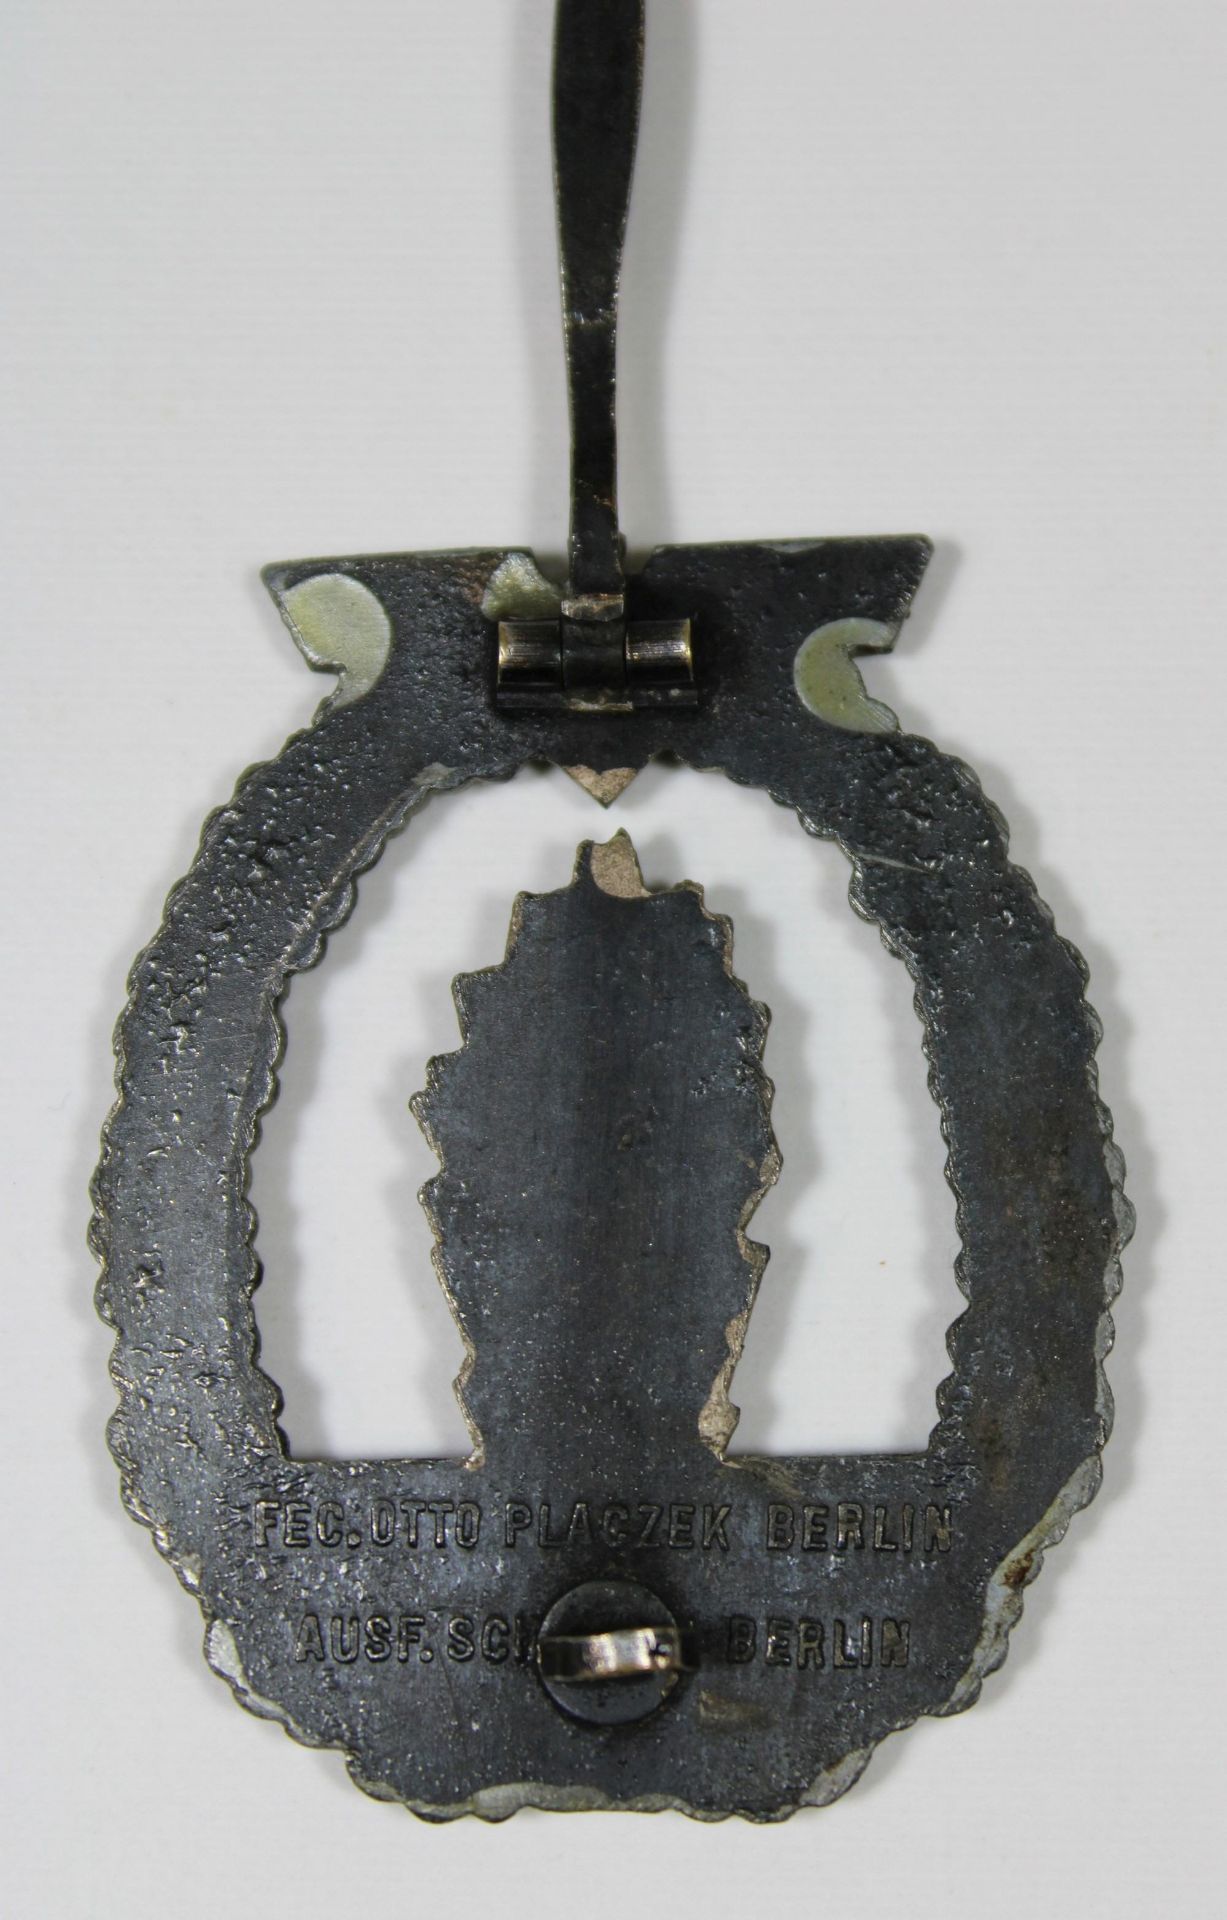 Minensucherkriegsabzeichen, Buntmetall, Ruckseite: massiv, Markierung des Herstellers: Fec.Otto Pla - Image 2 of 2